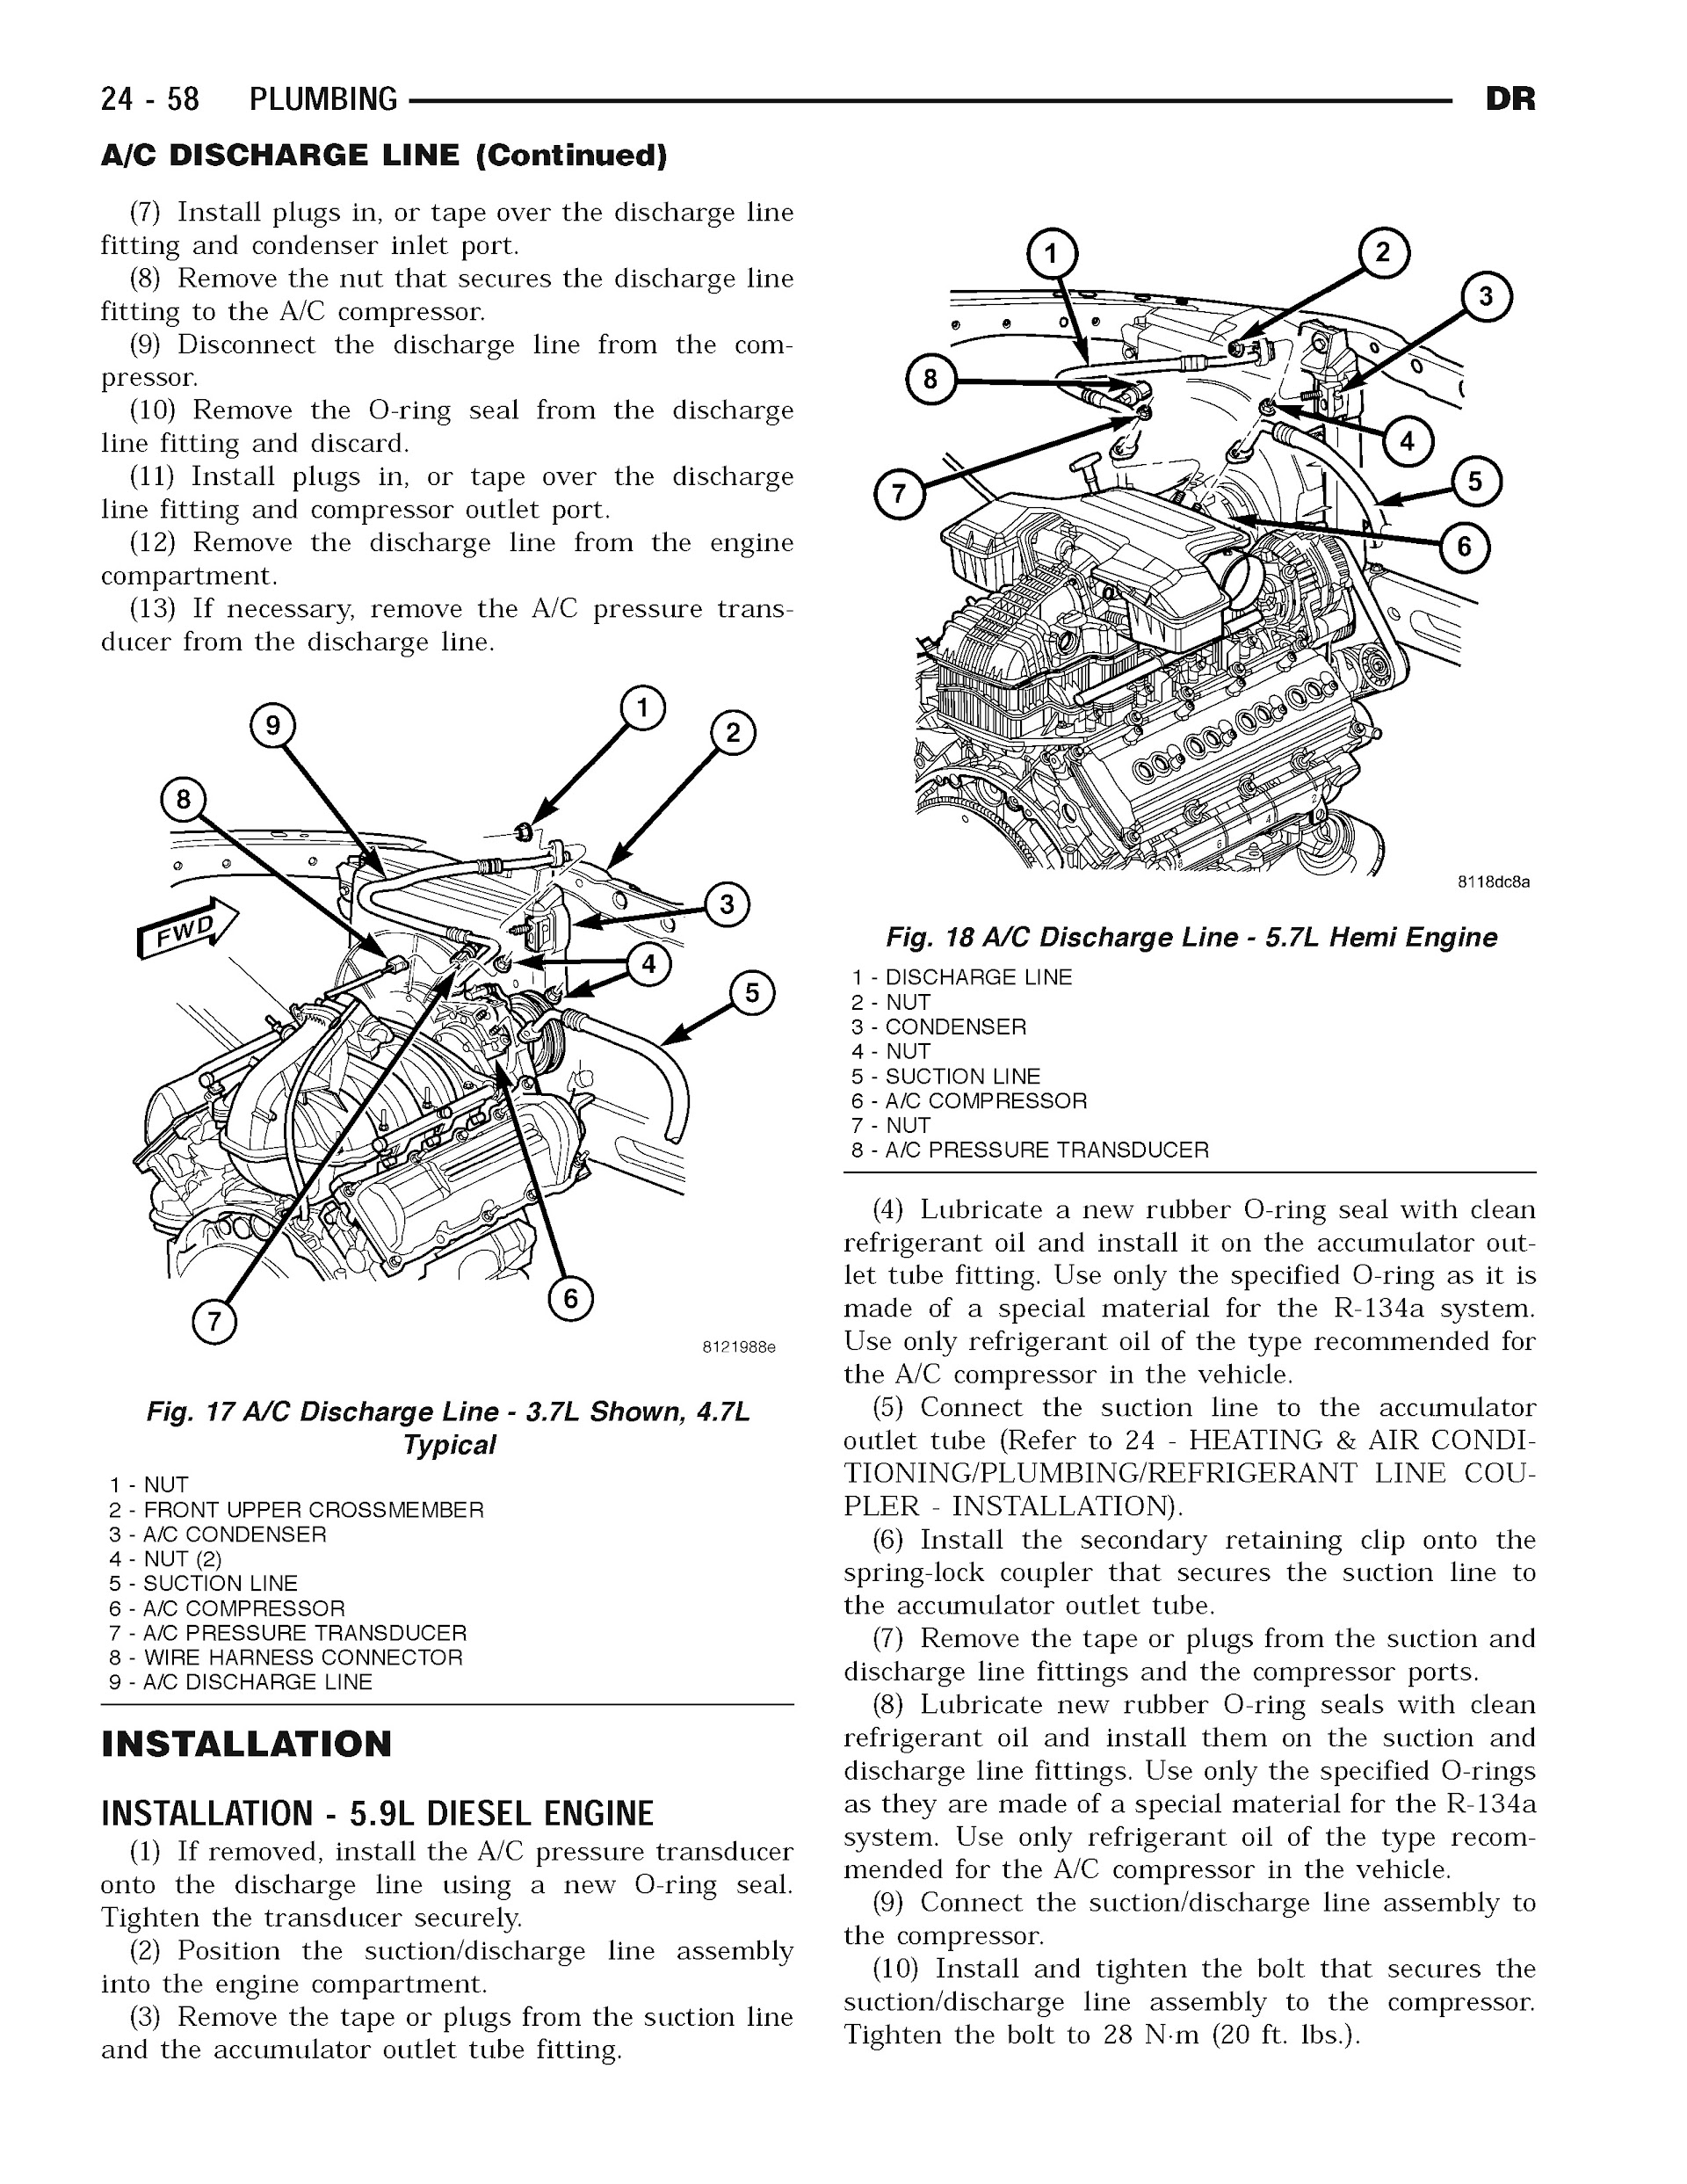 2004 Dodge RAM Truck Repair Manual, A/C Discharge Line